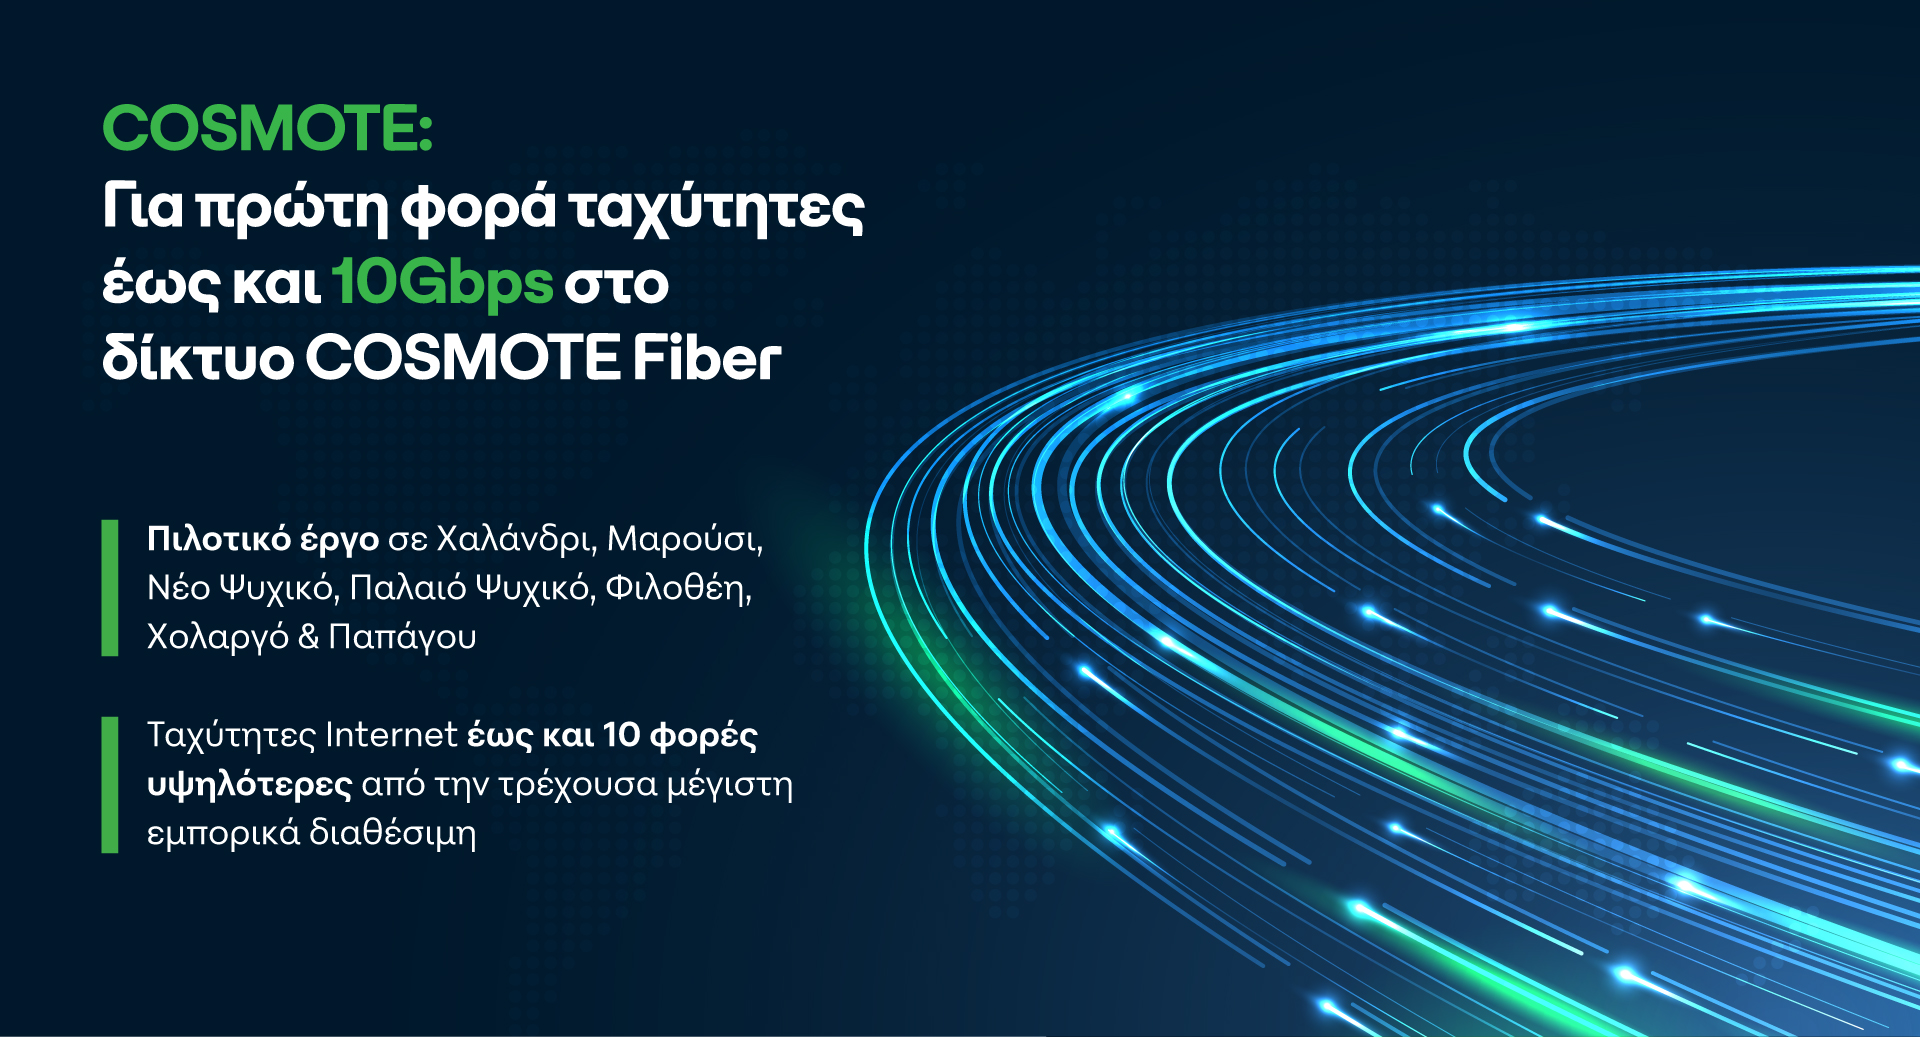 cosmote: tαχύτητες έως 10gbps στο δίκτυο cosmote fiber